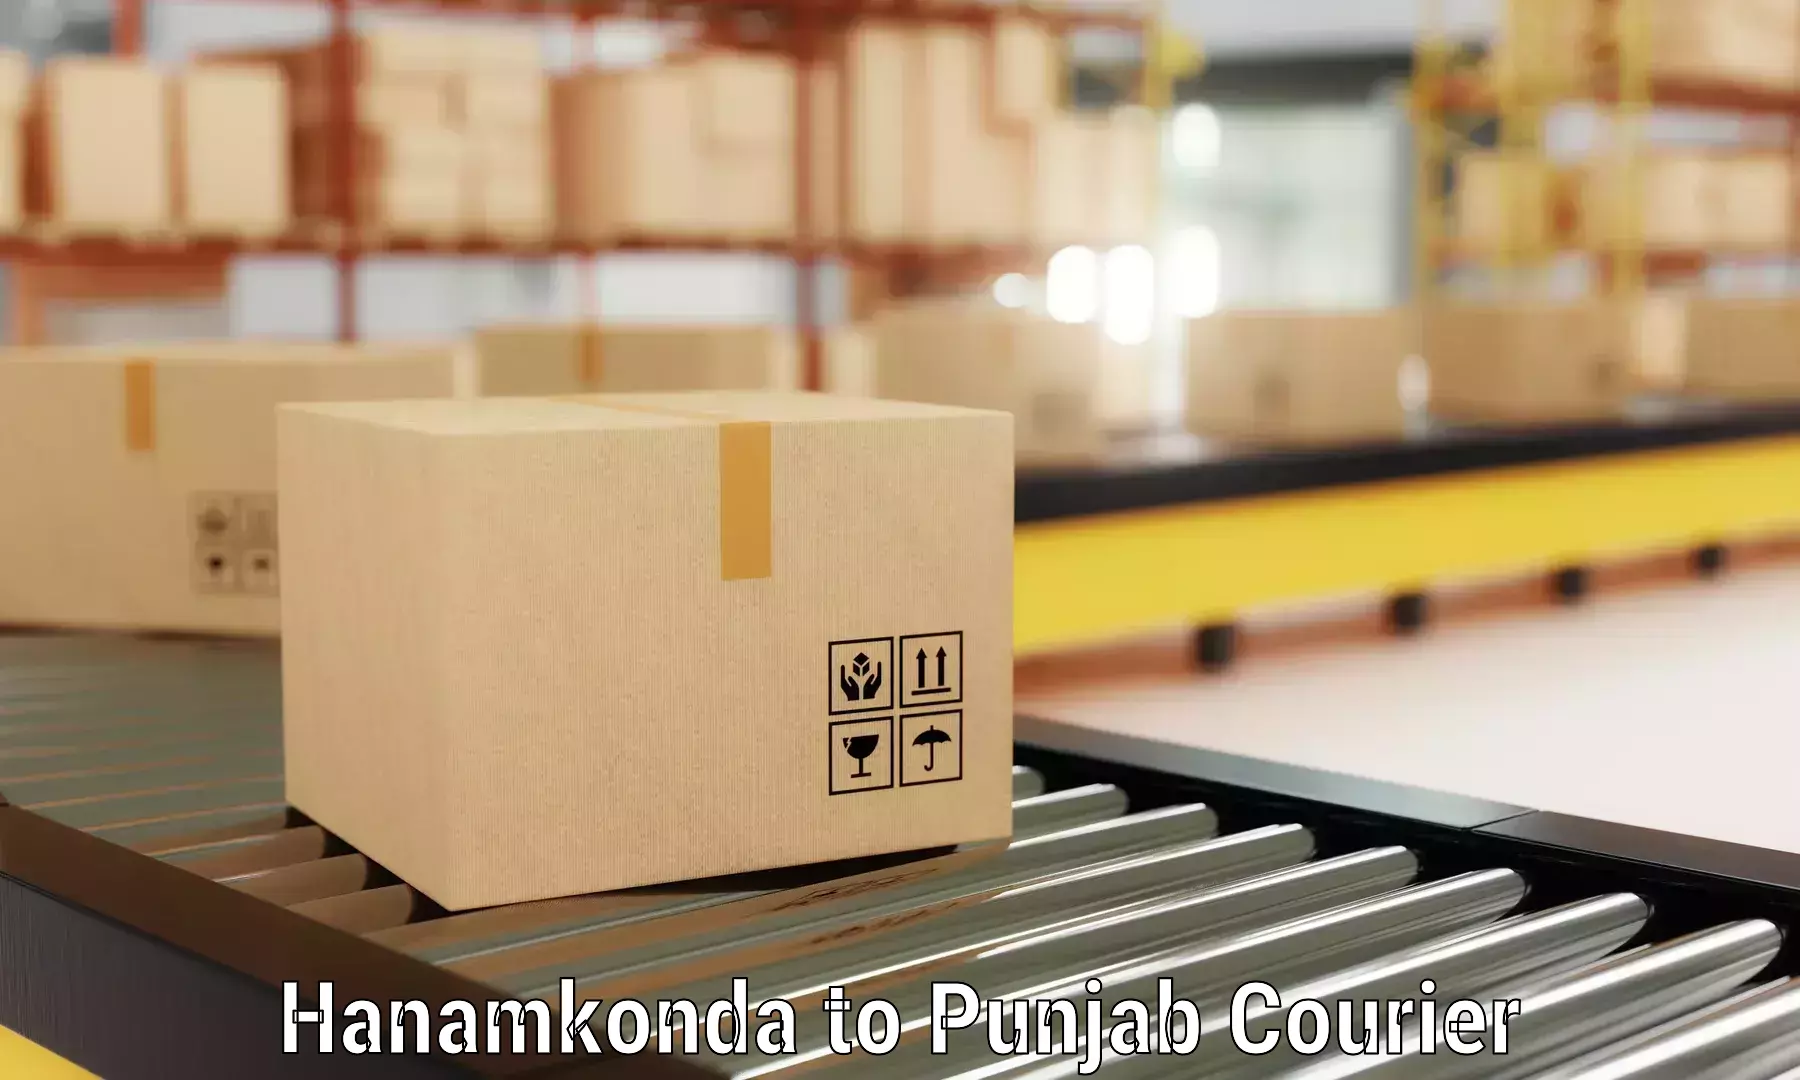 Efficient moving company Hanamkonda to Mohali